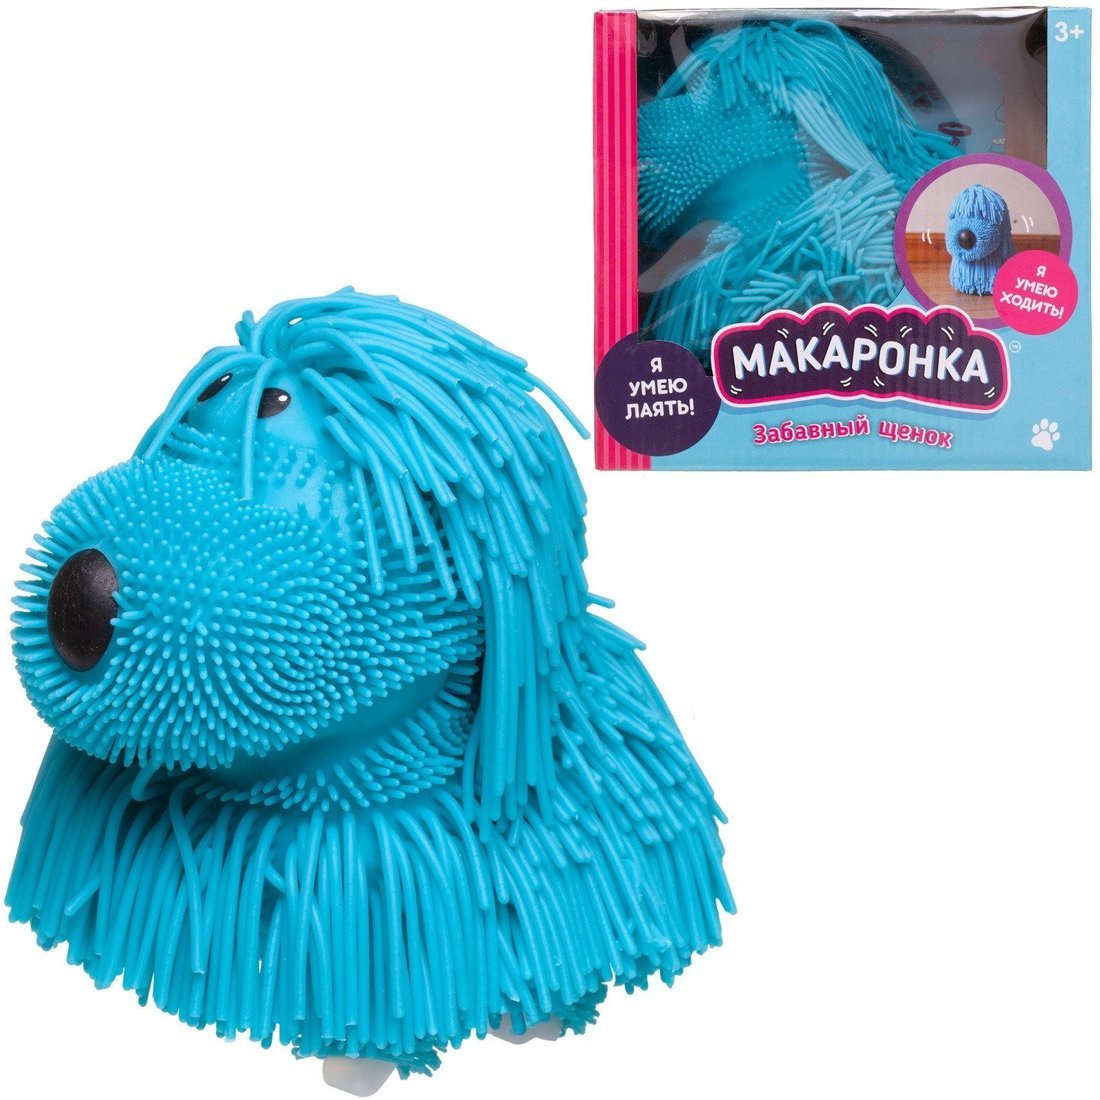 Интерактивная игрушка Макаронка Собака голубая ходит, звуковые и музыкальные эффекты.